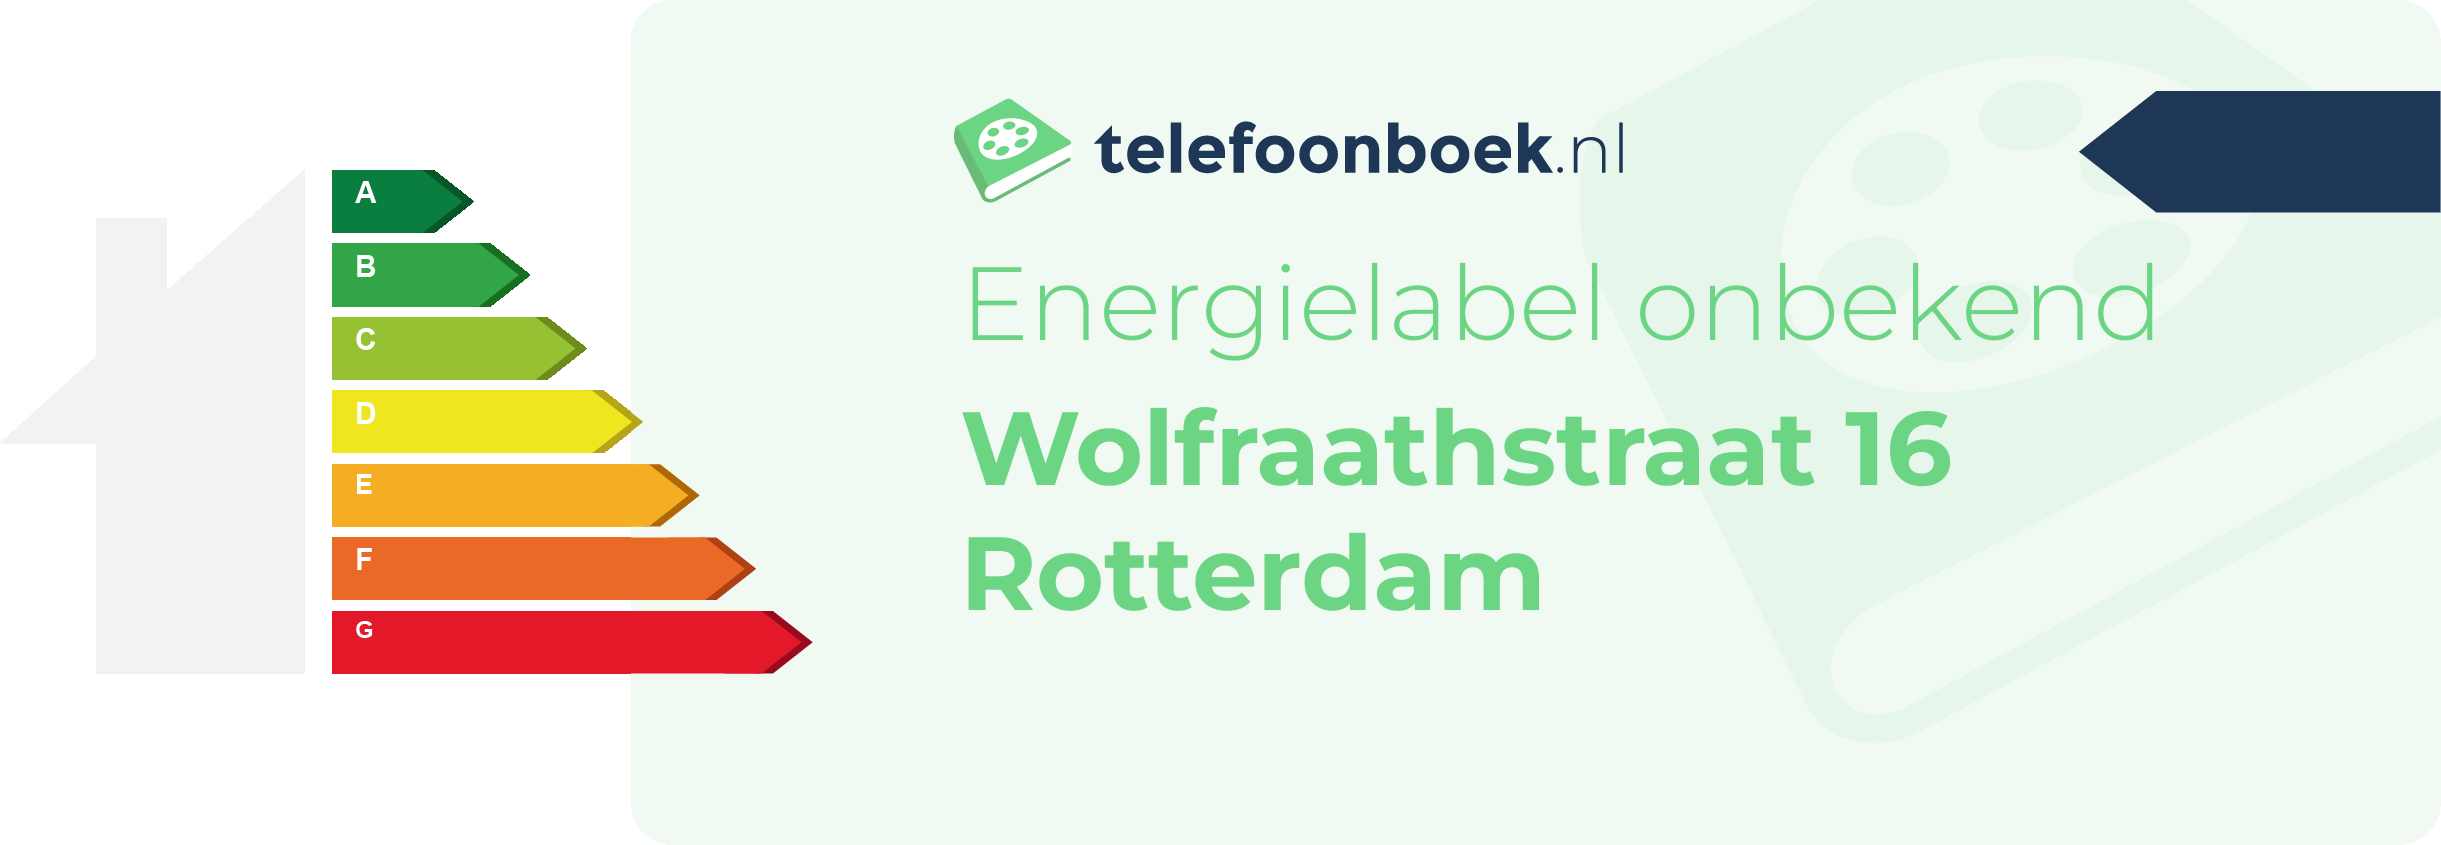 Energielabel Wolfraathstraat 16 Rotterdam